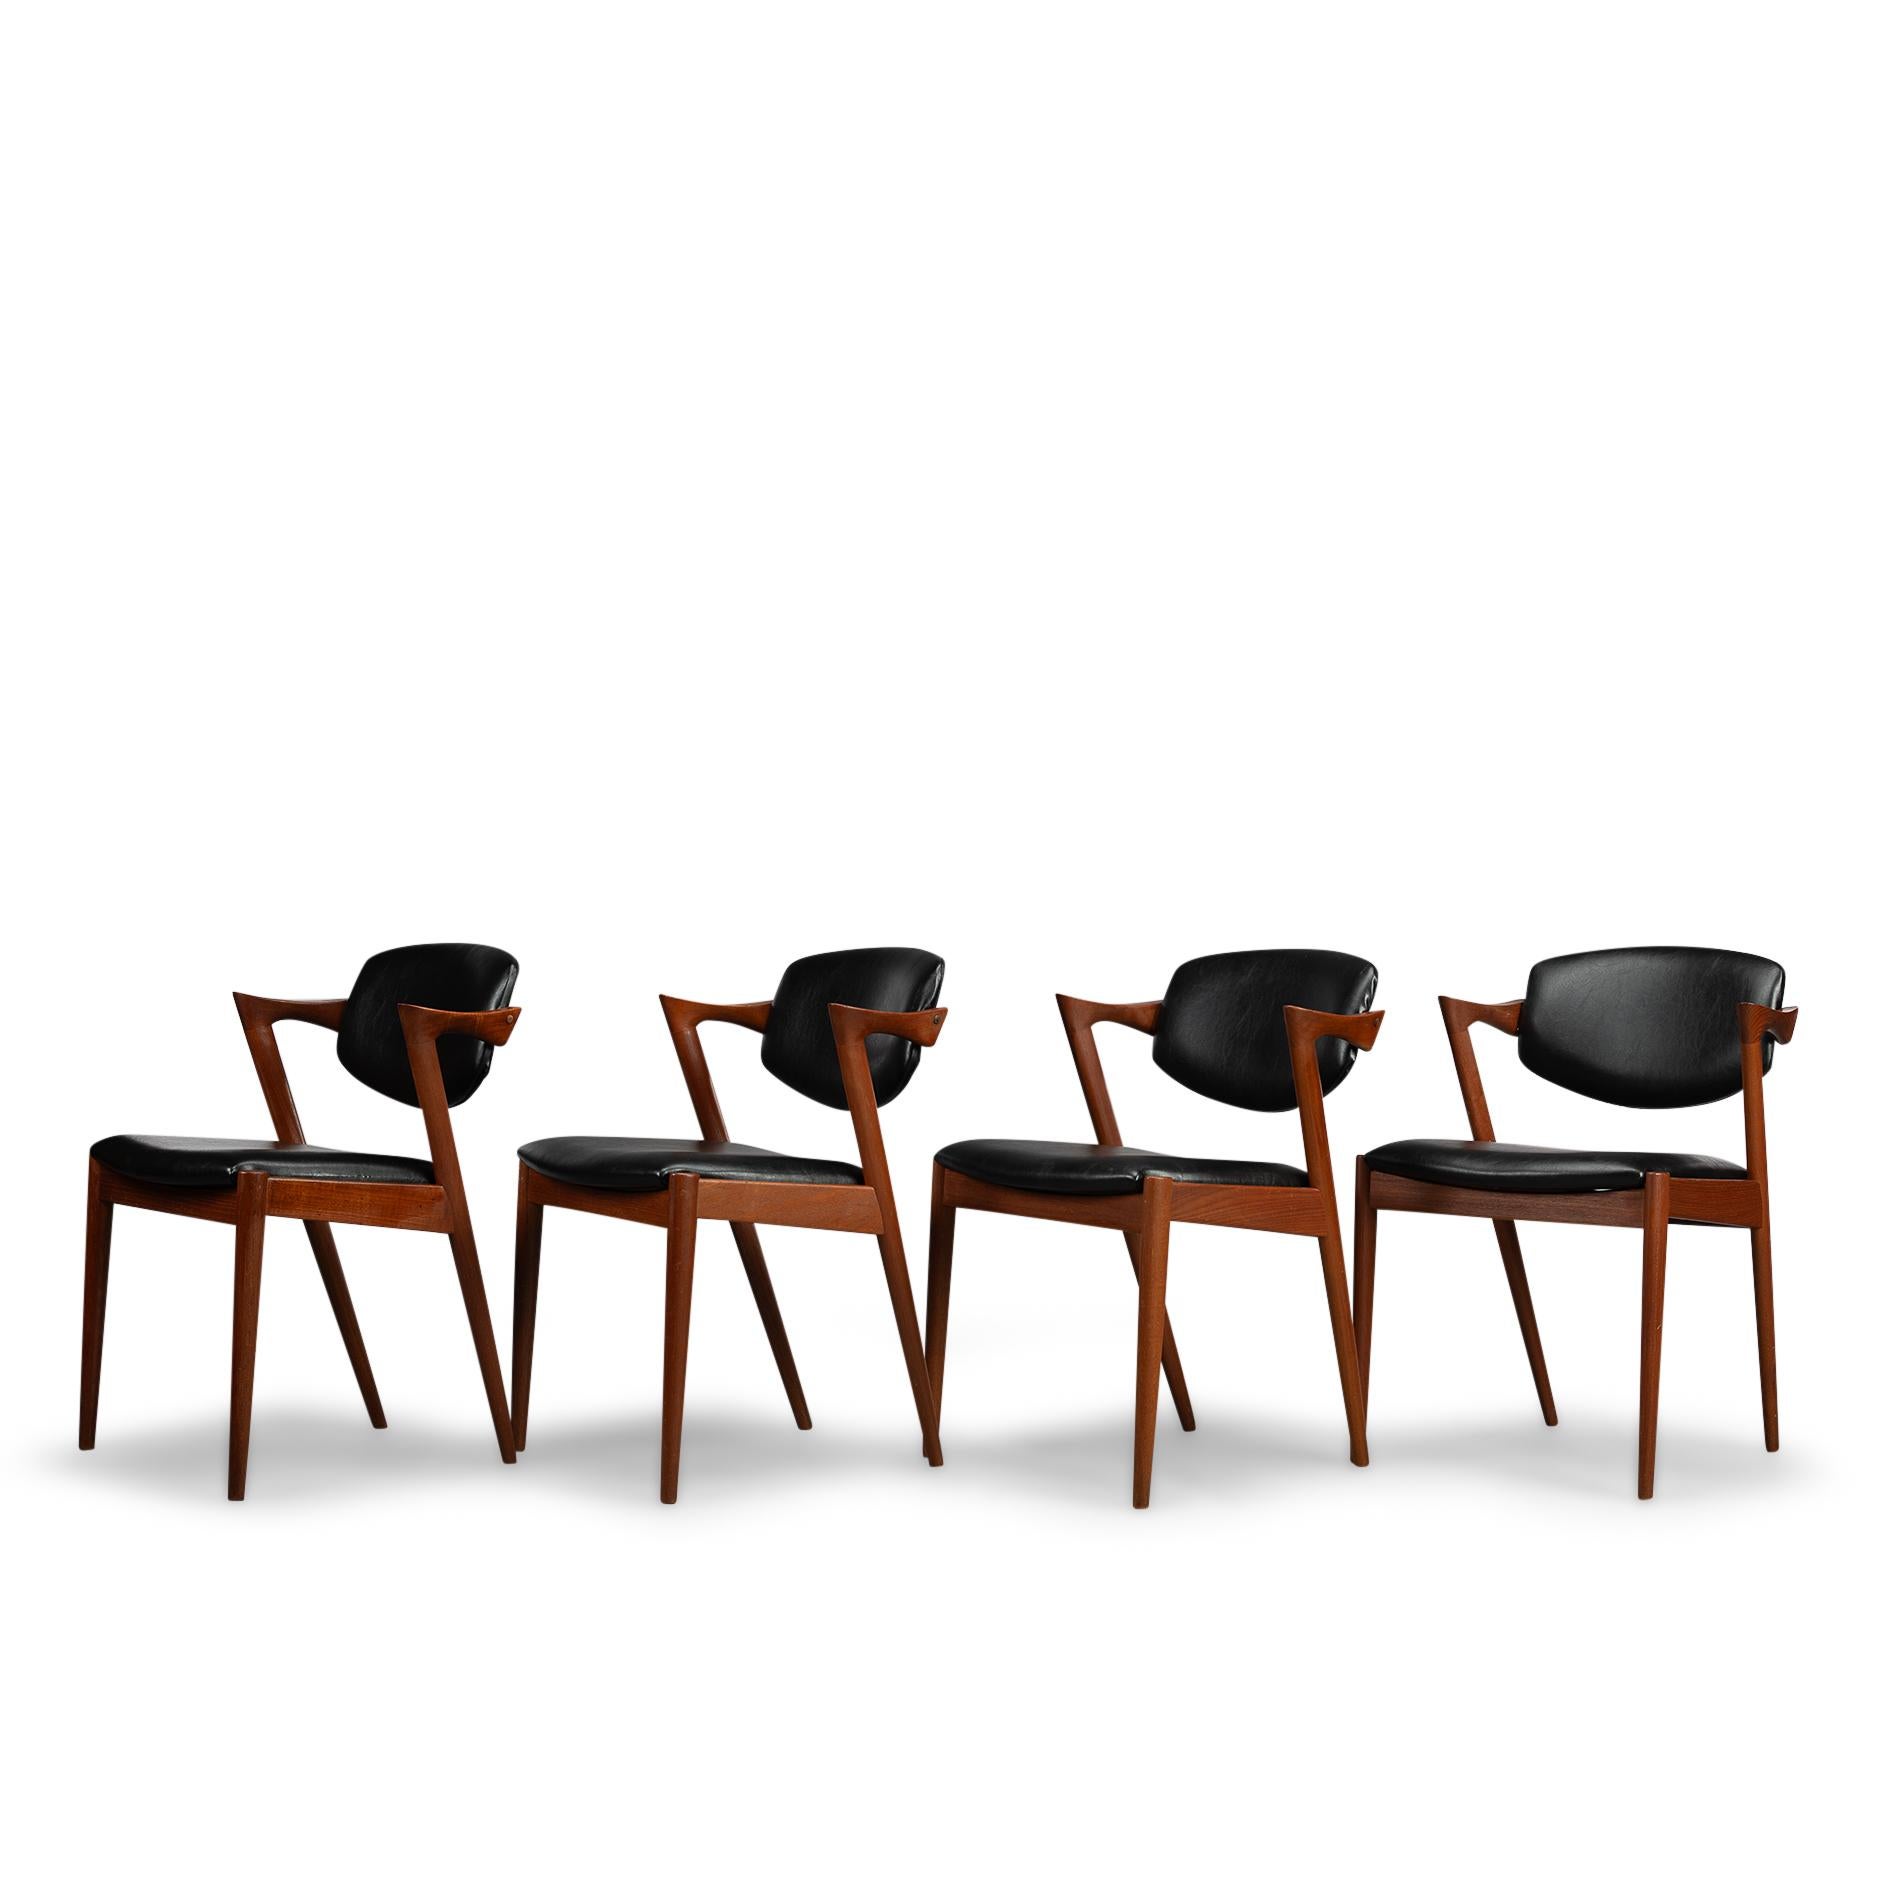 Dänischer Z-Stuhl aus Teakholz aus der Jahrhundertmitte, Modell 42, von Kai Kristiansen, 1960er Jahre, 4 Exemplare (Moderne der Mitte des Jahrhunderts)